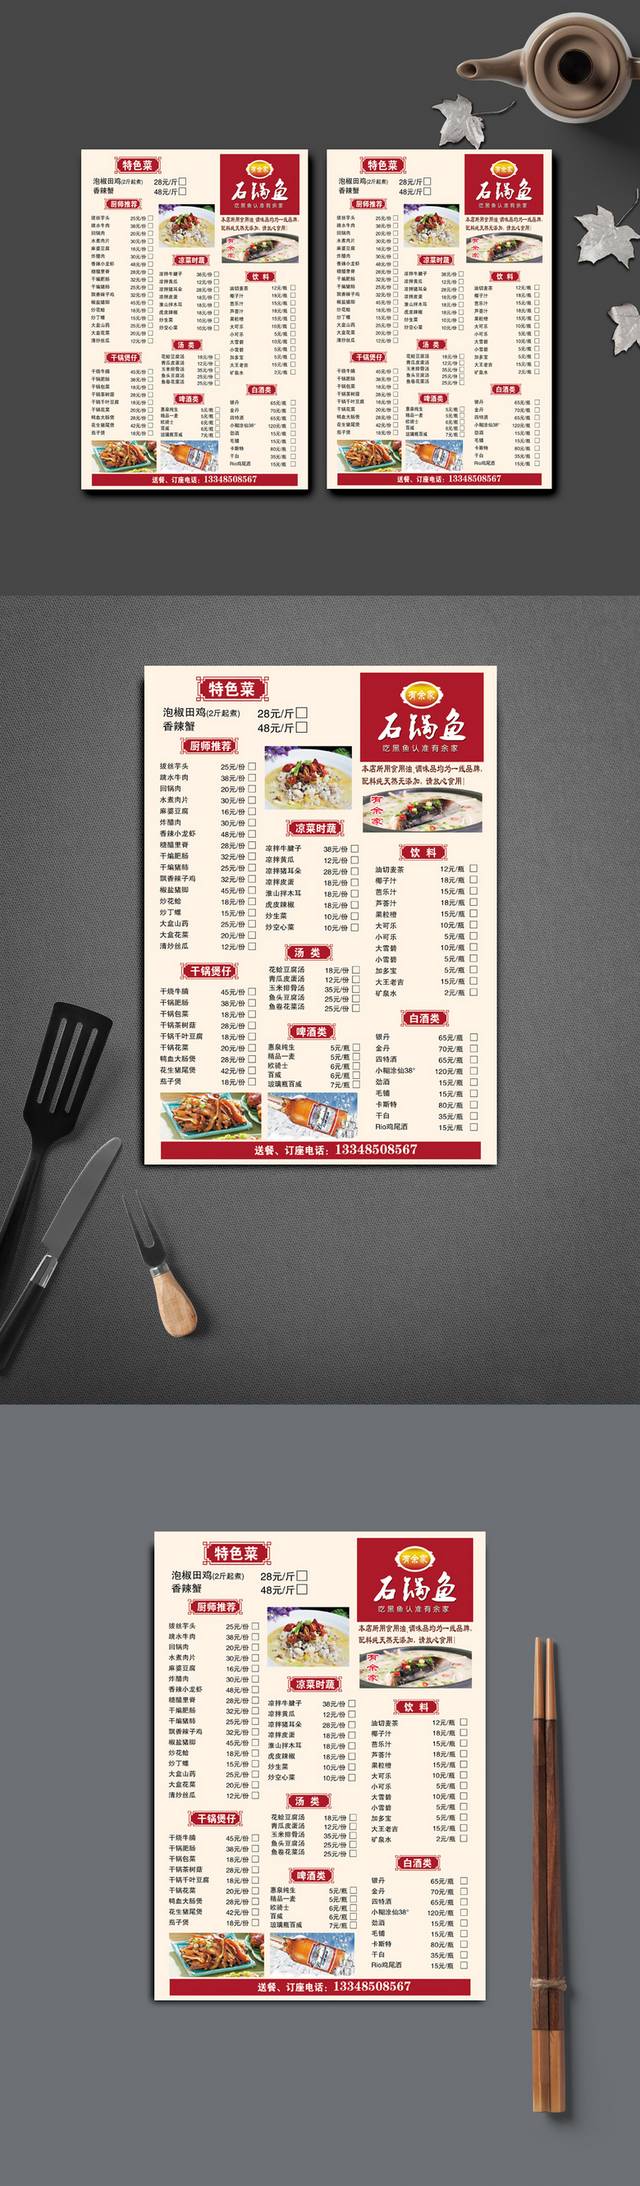 特色餐厅菜单模板下载